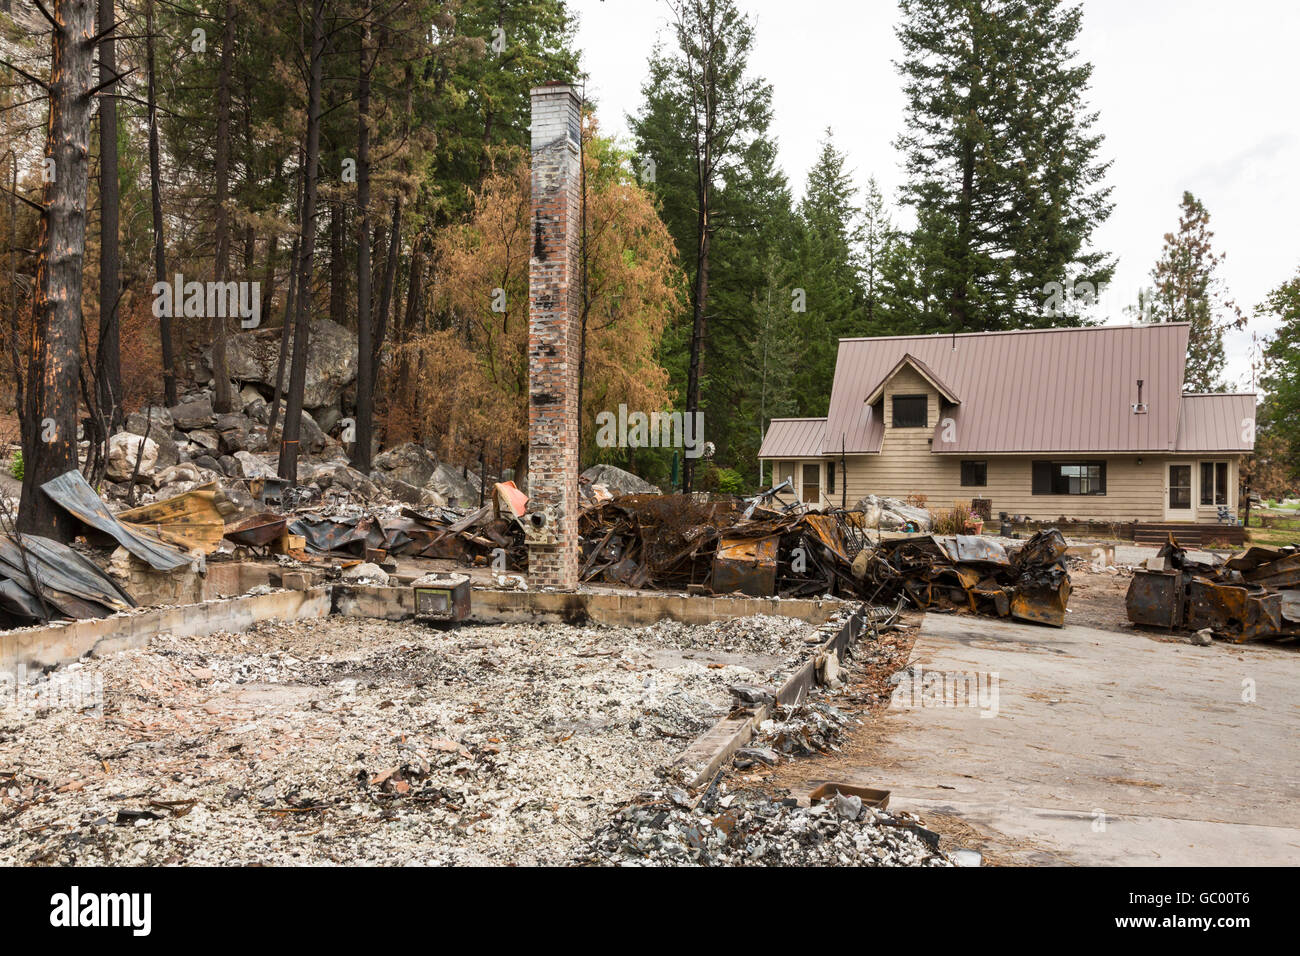 Ruines d'une maison qui a brûlé à côté du sol lors de l'accueil reste intact après un désastre naturel de forêt Les feux de forêt Banque D'Images